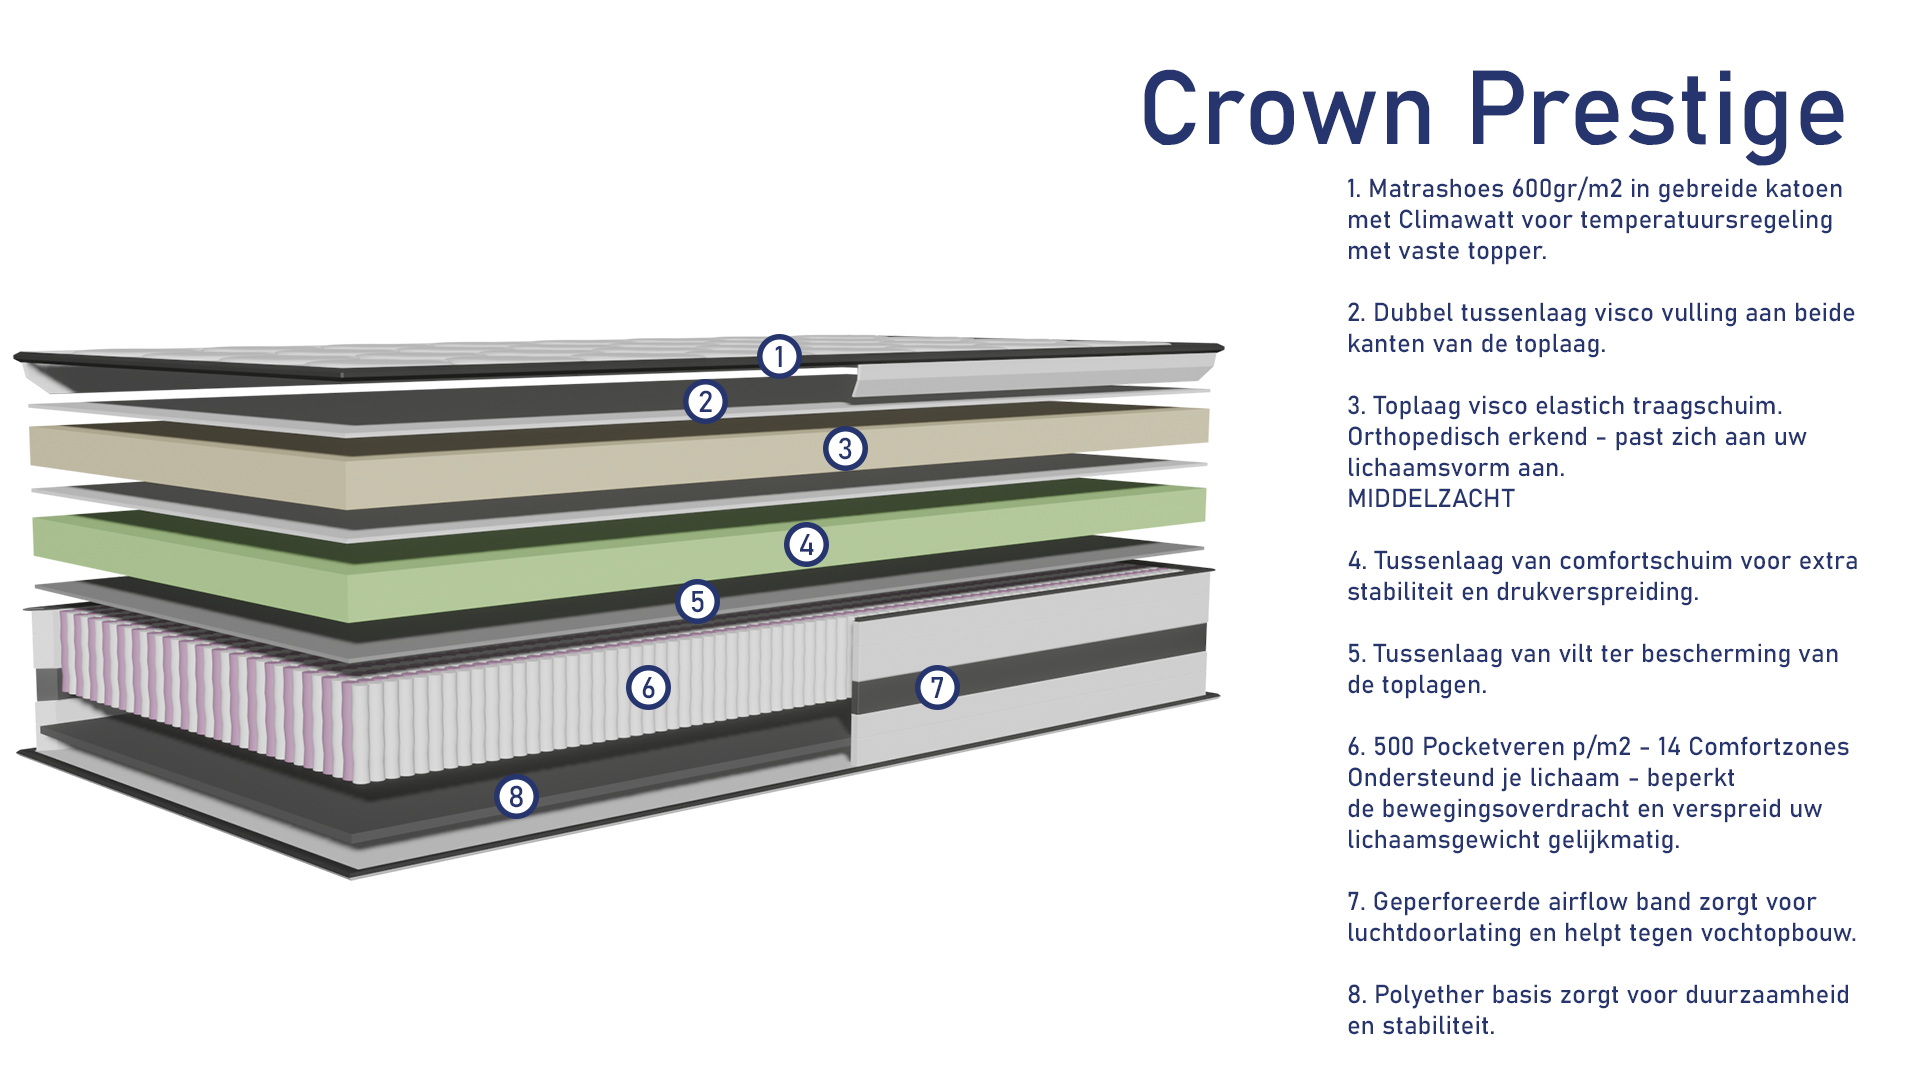 Crown Prestige - Uitleg.png